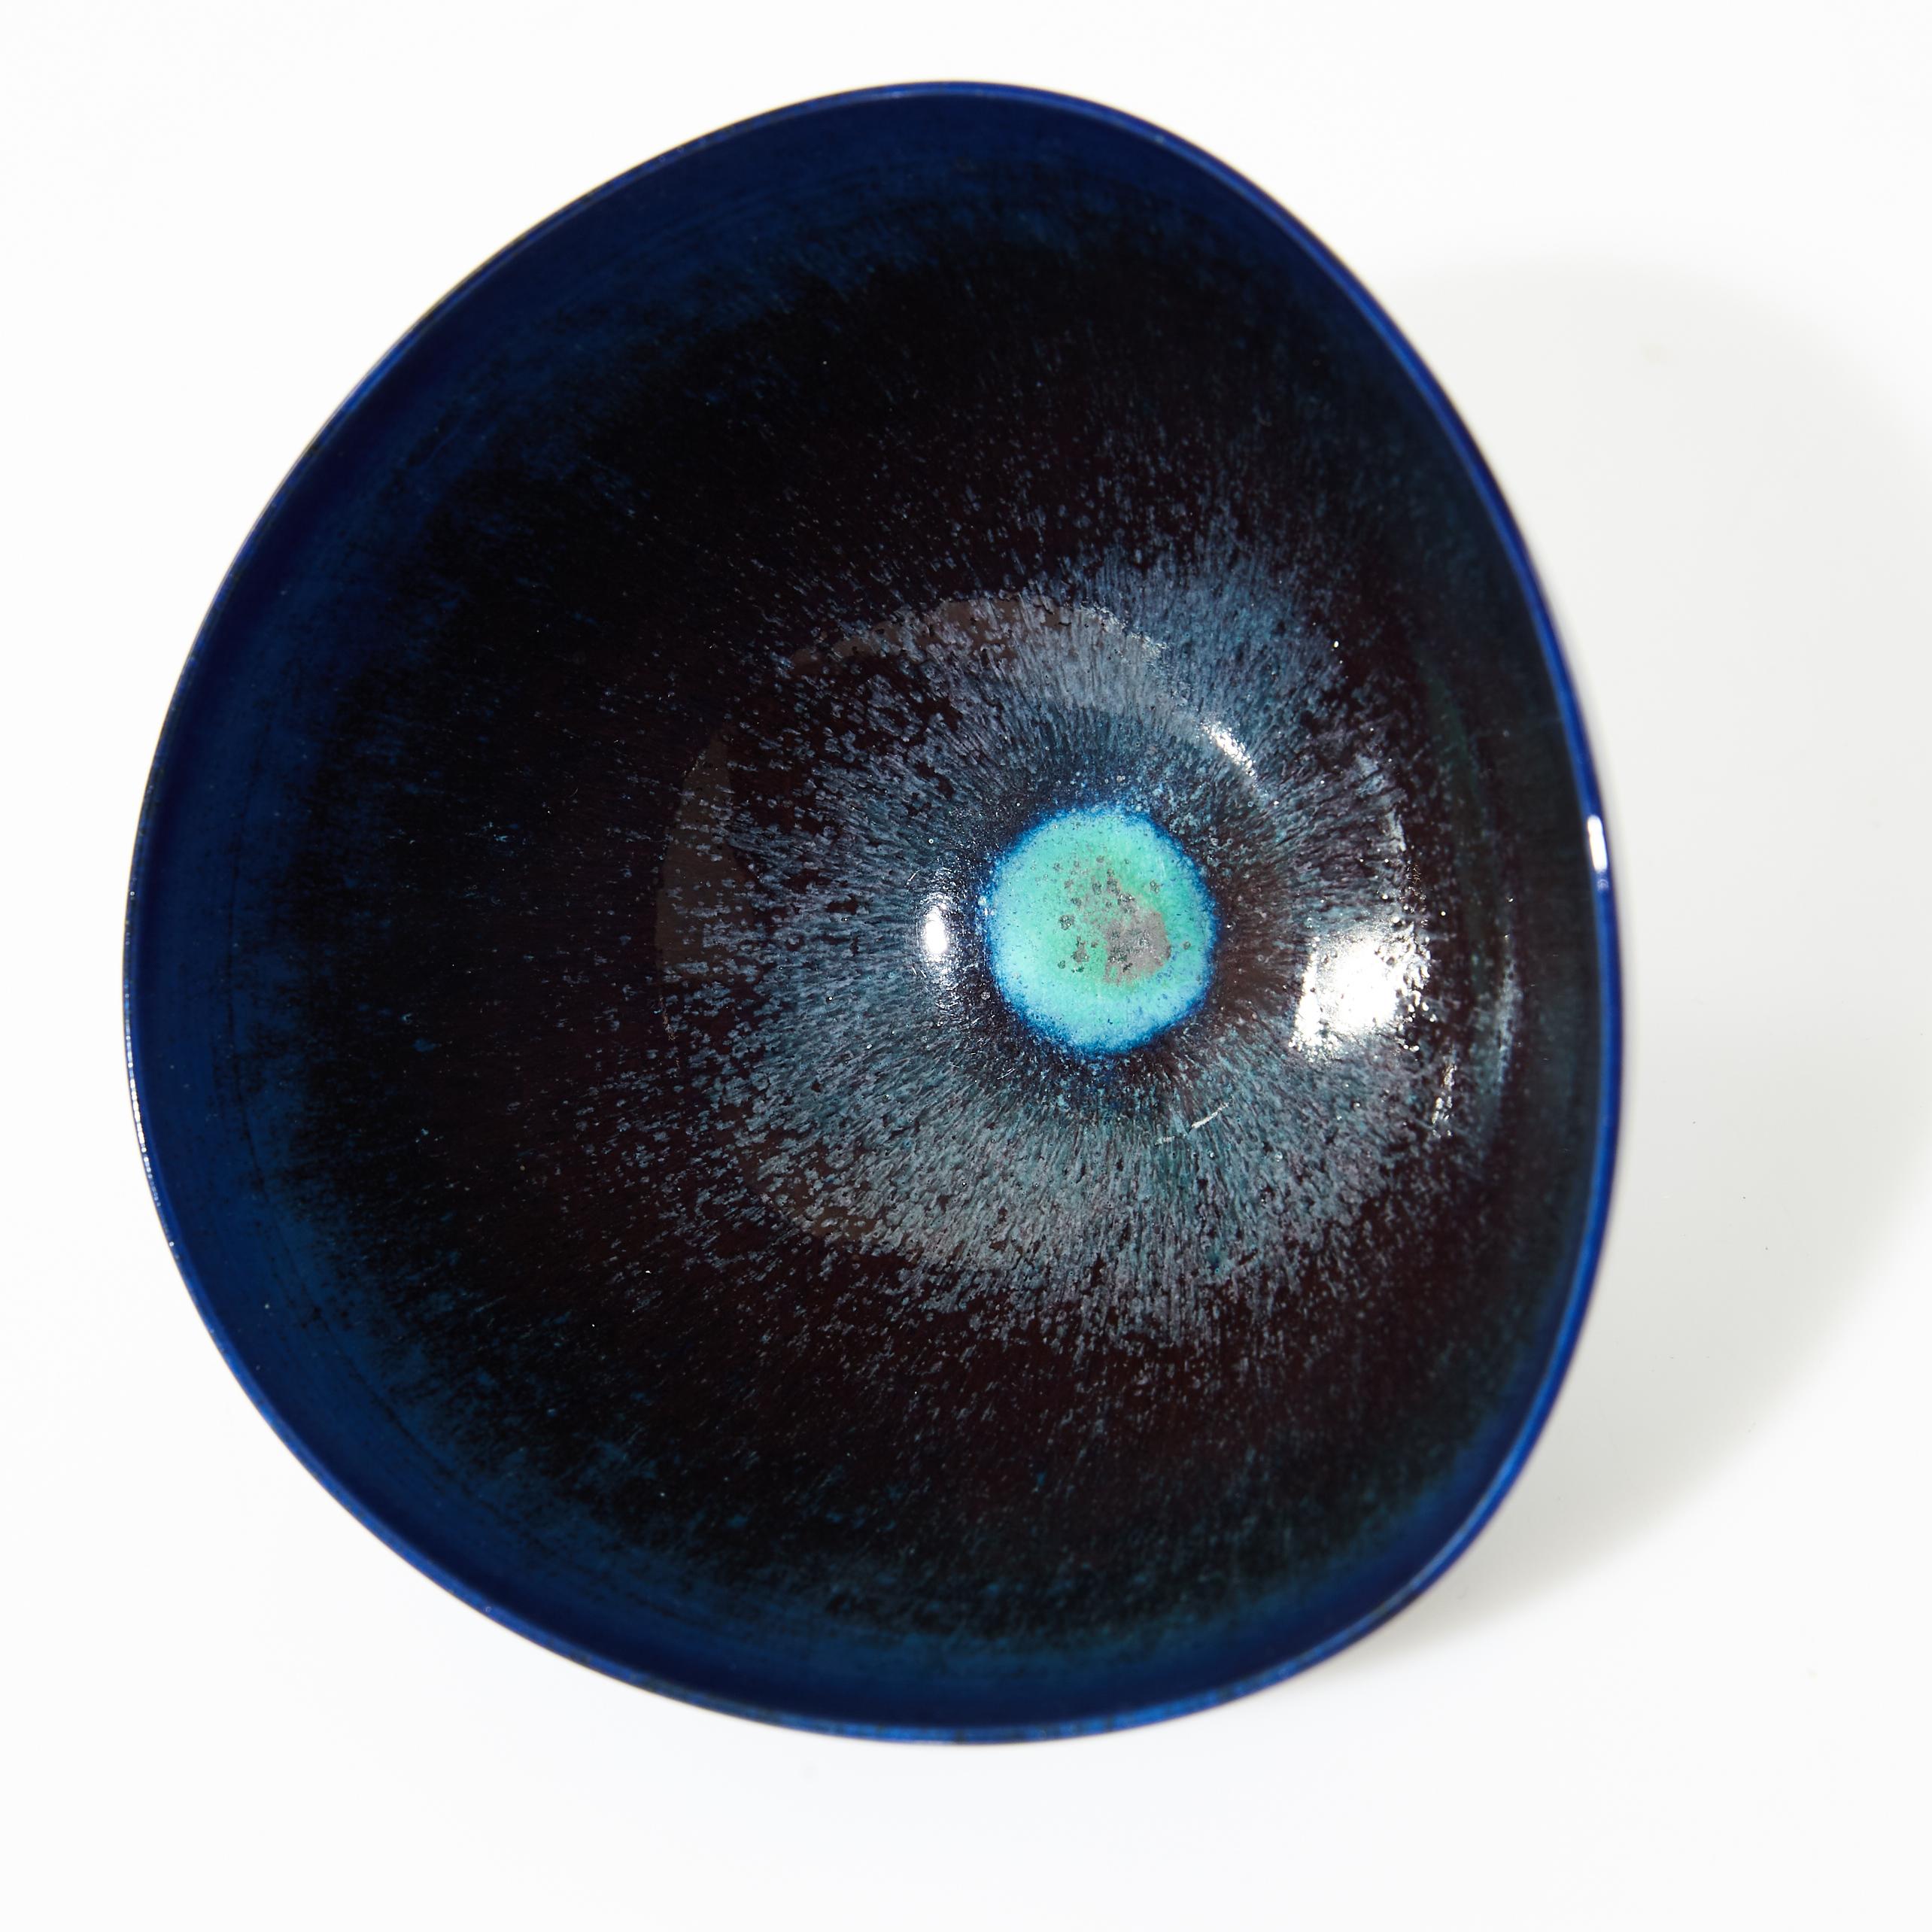 Berndt Friberg (1899-1981) studio ceramic bowl or vide poche, modern Swedish design for Gustavsberg.
Unique, handmade.
Amazing glaze in blue nuances.
Signed with incised marks.